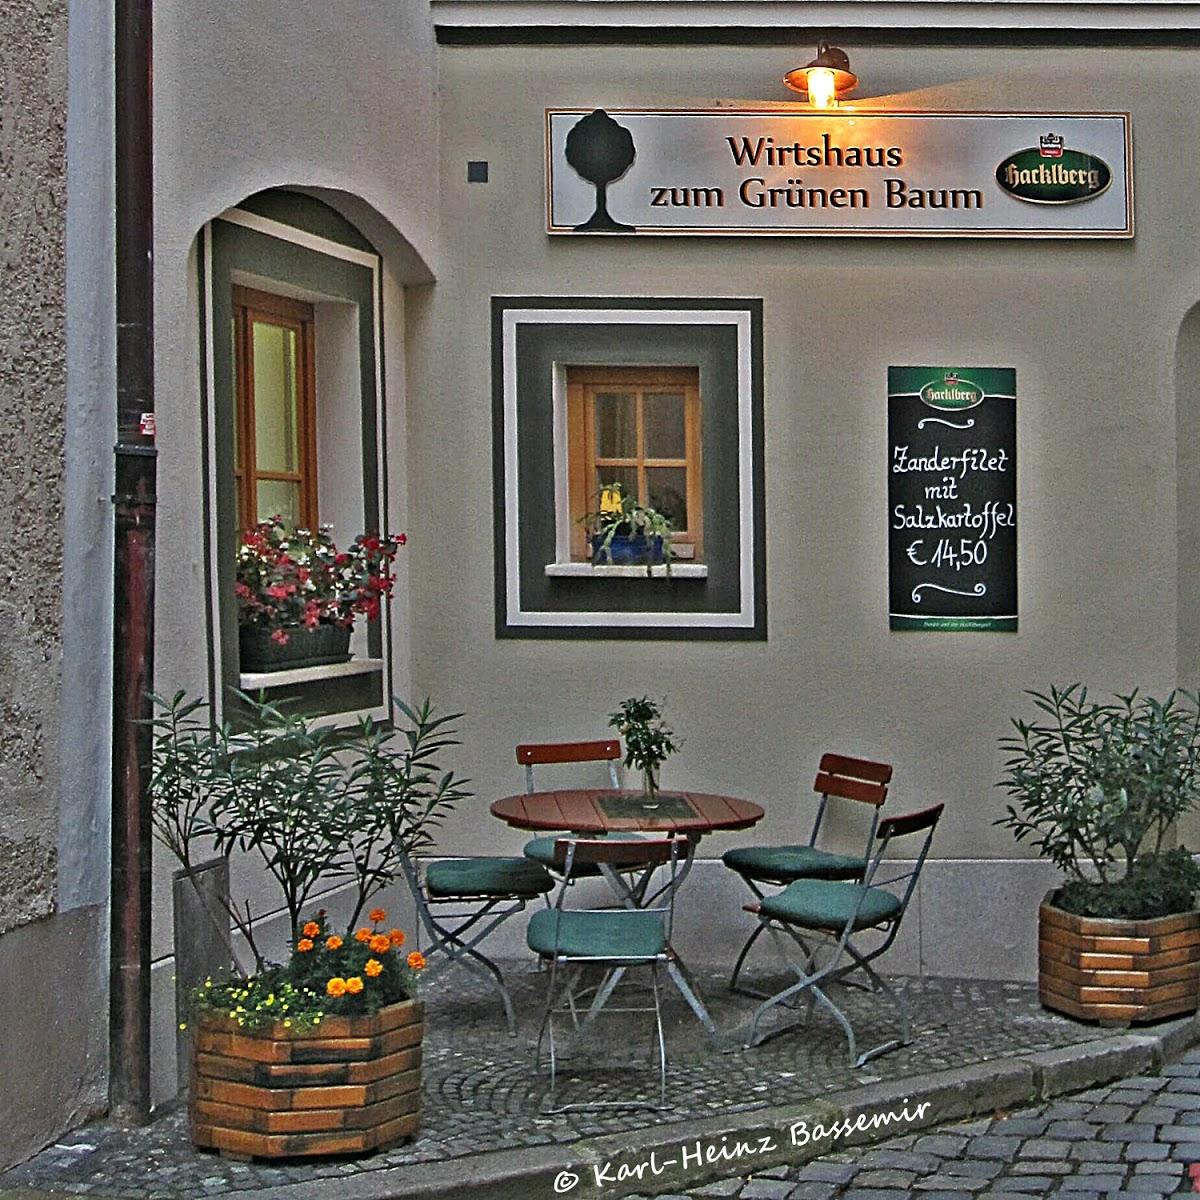 Restaurant "Wirtshaus zum grünen Baum" in Passau